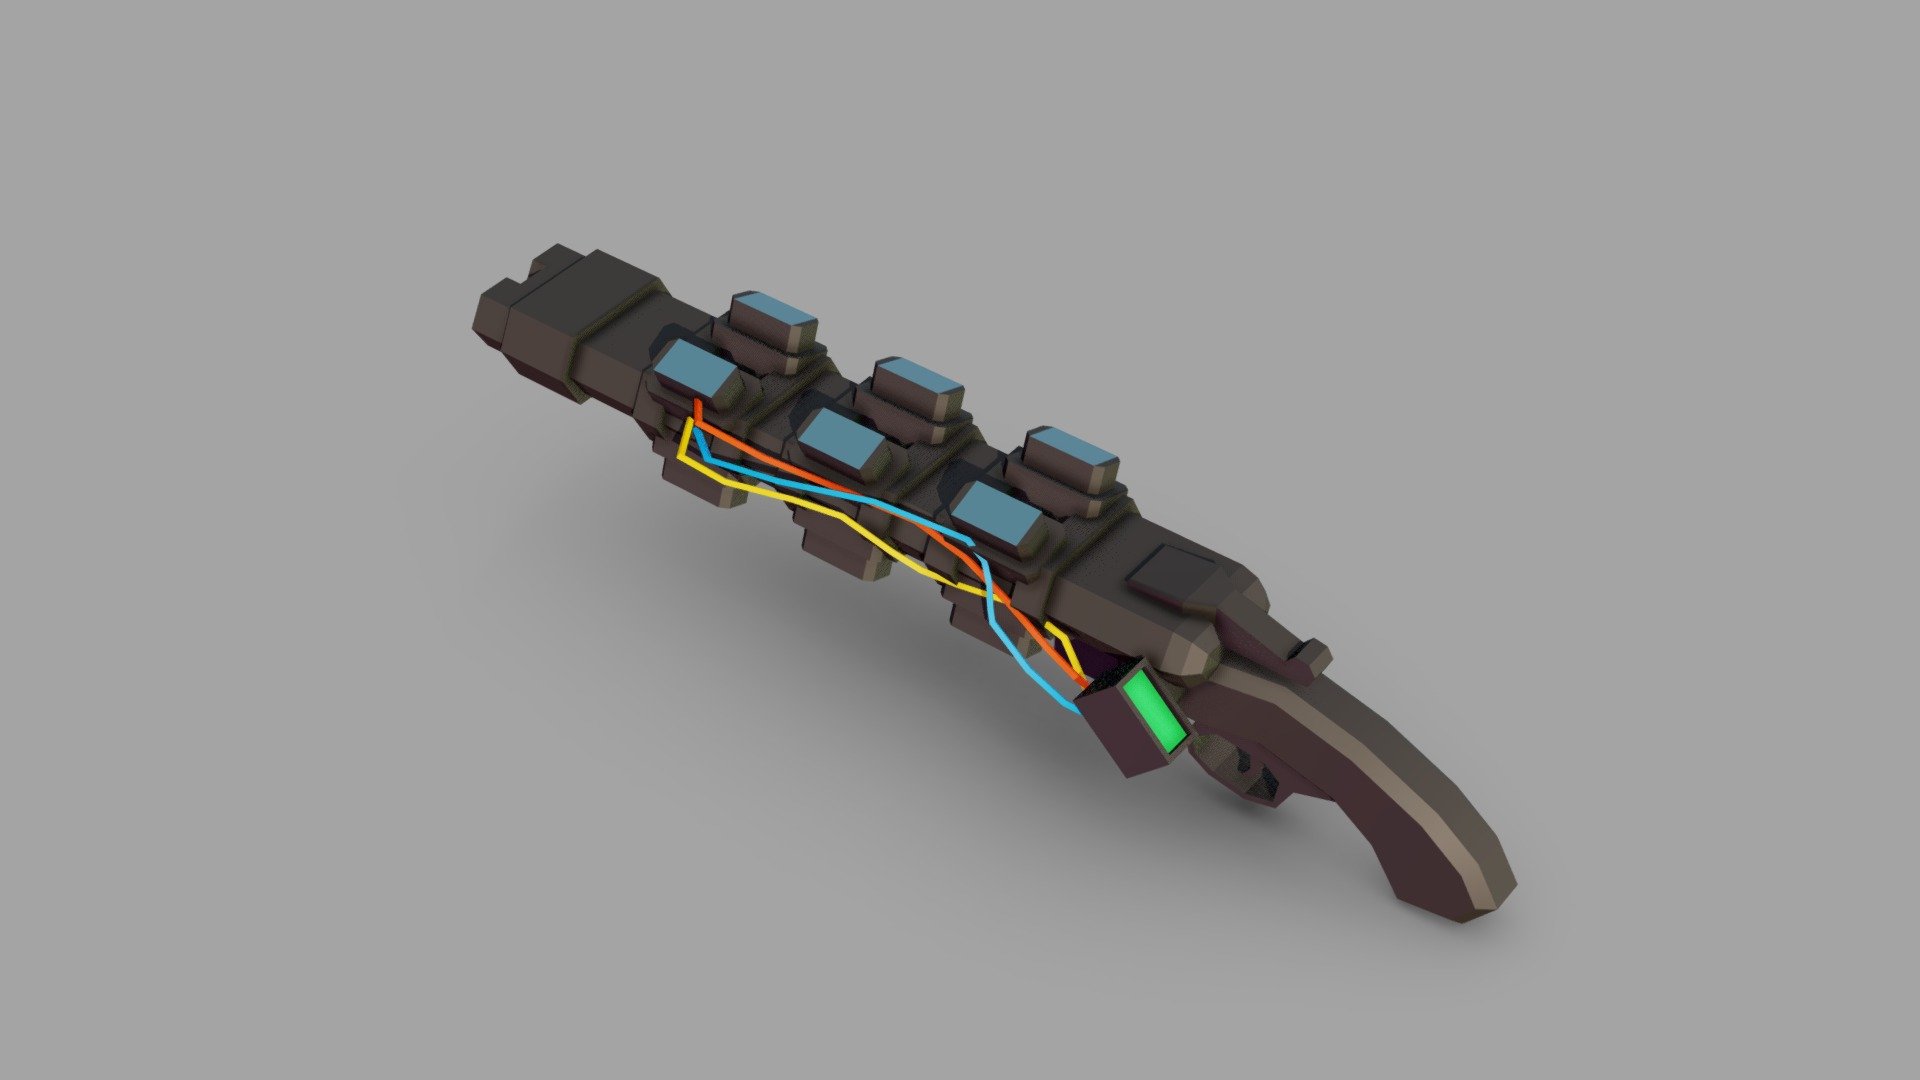 Cyberpunk weapon 3d model фото 3